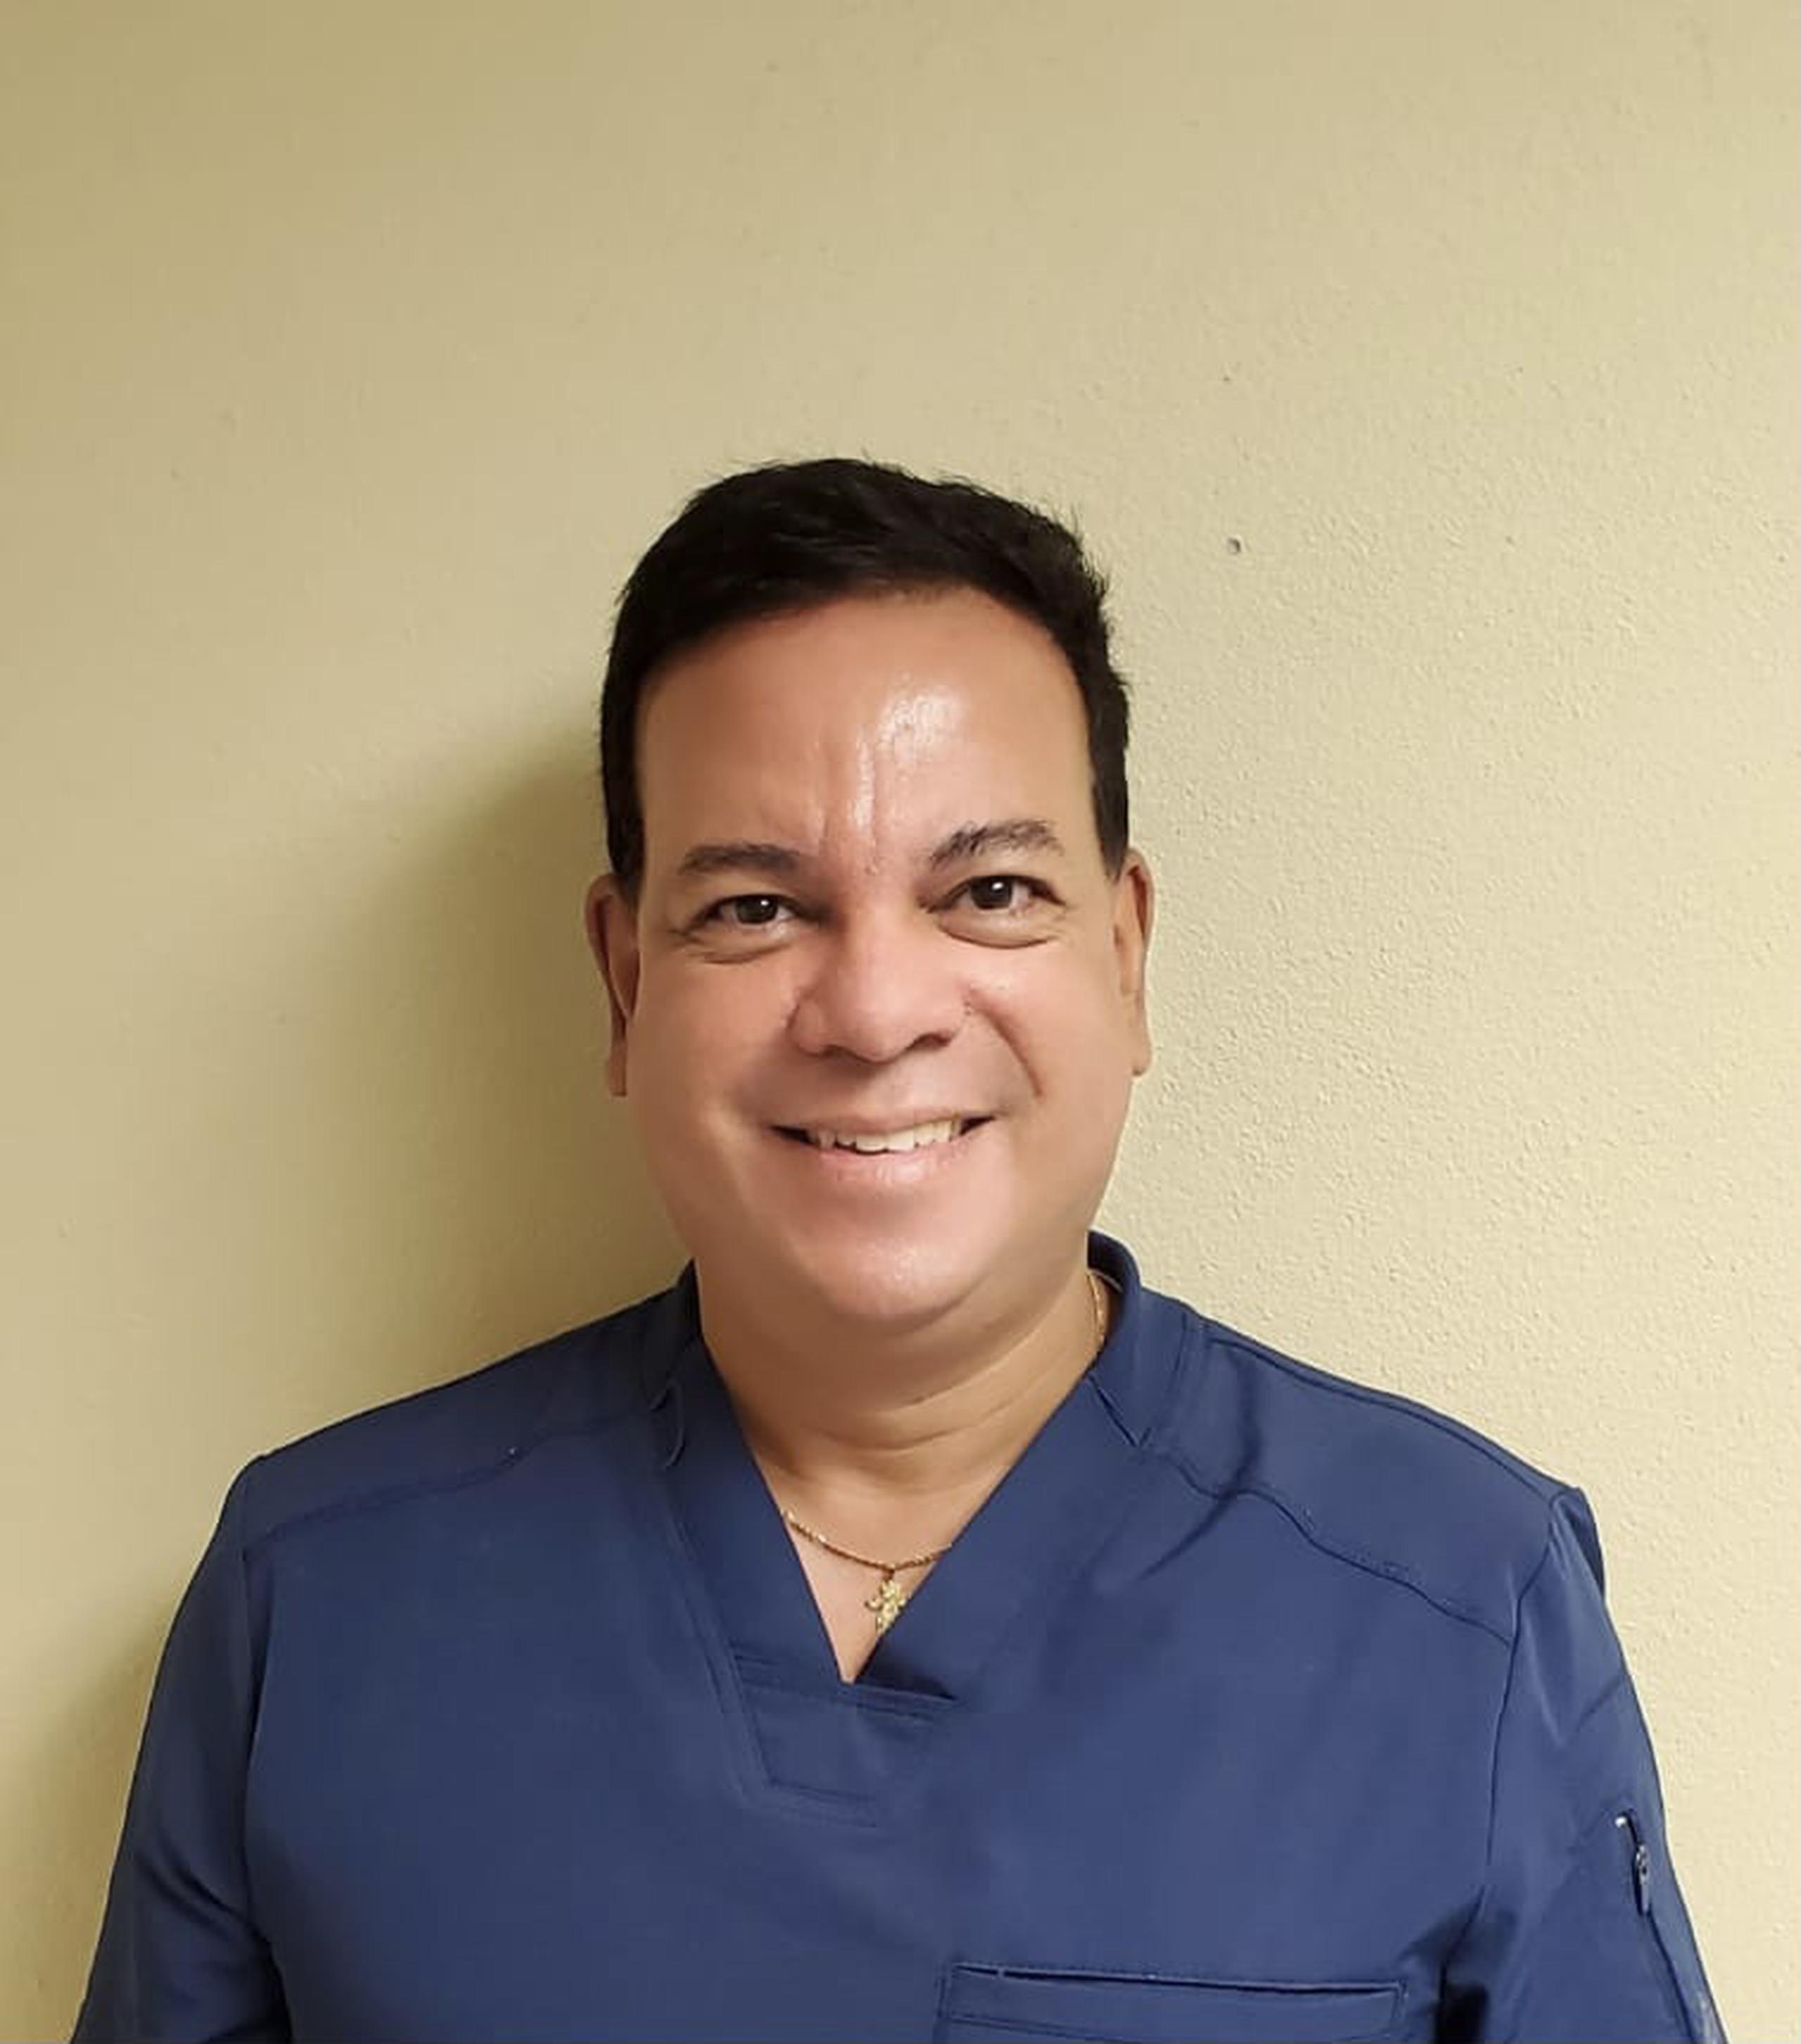 El doctor Gerardo J. Tosca Claudio es pediatra y presidente 2022-2024 de la Sociedad Puertorriqueña de Pediatría.